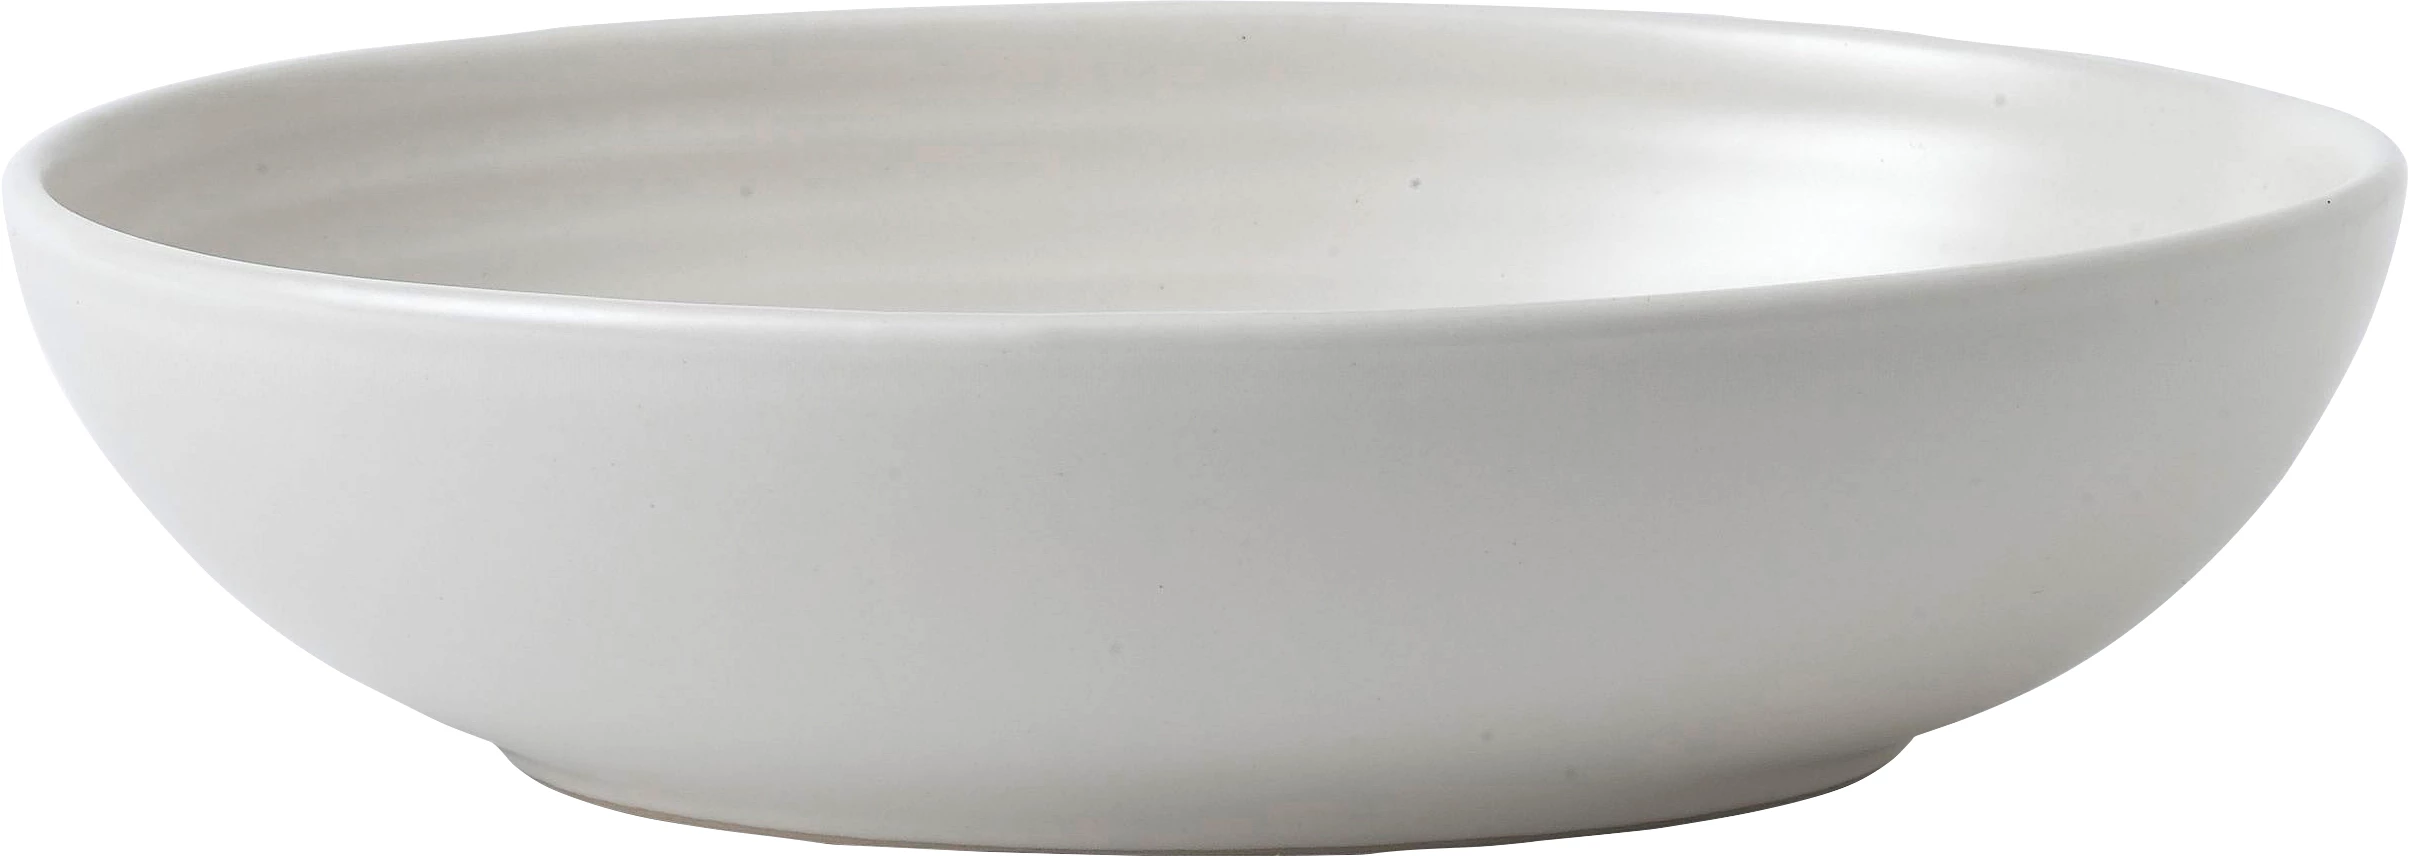 Dudson Evo Pearl skål, oval, hvid, 21,6 x 16,4 cm